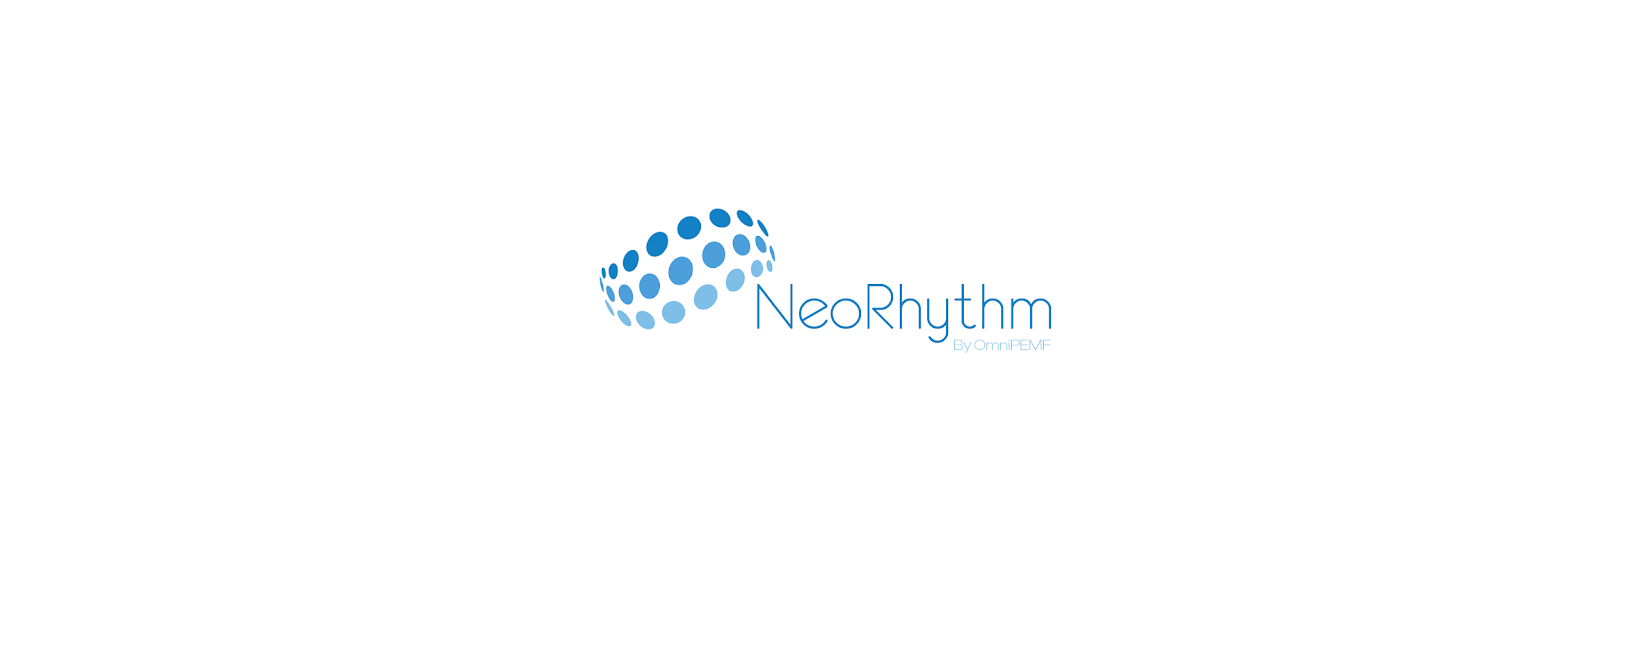 NeoRhythm Discount Codes 2022